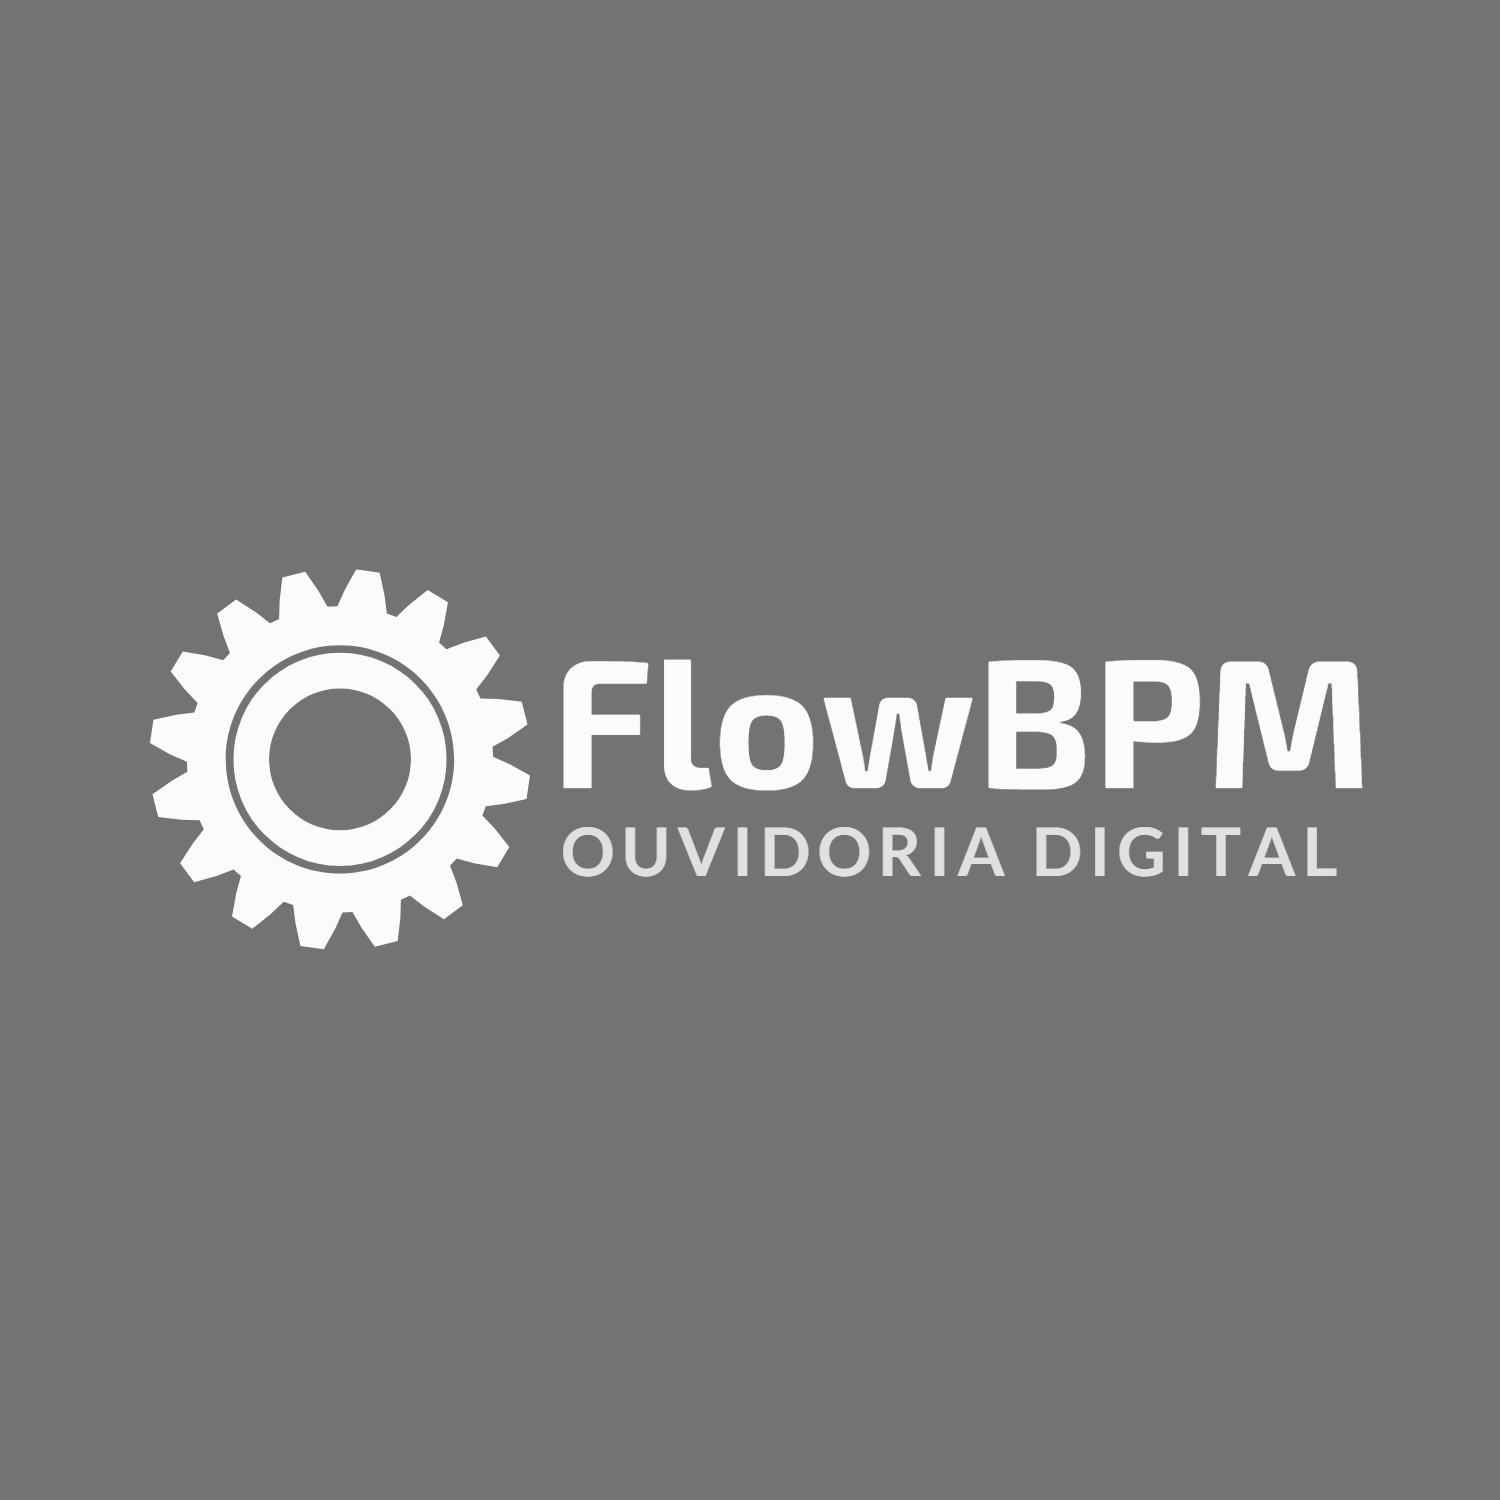 FLOWBPM – OUVIDORIA DIGITAL